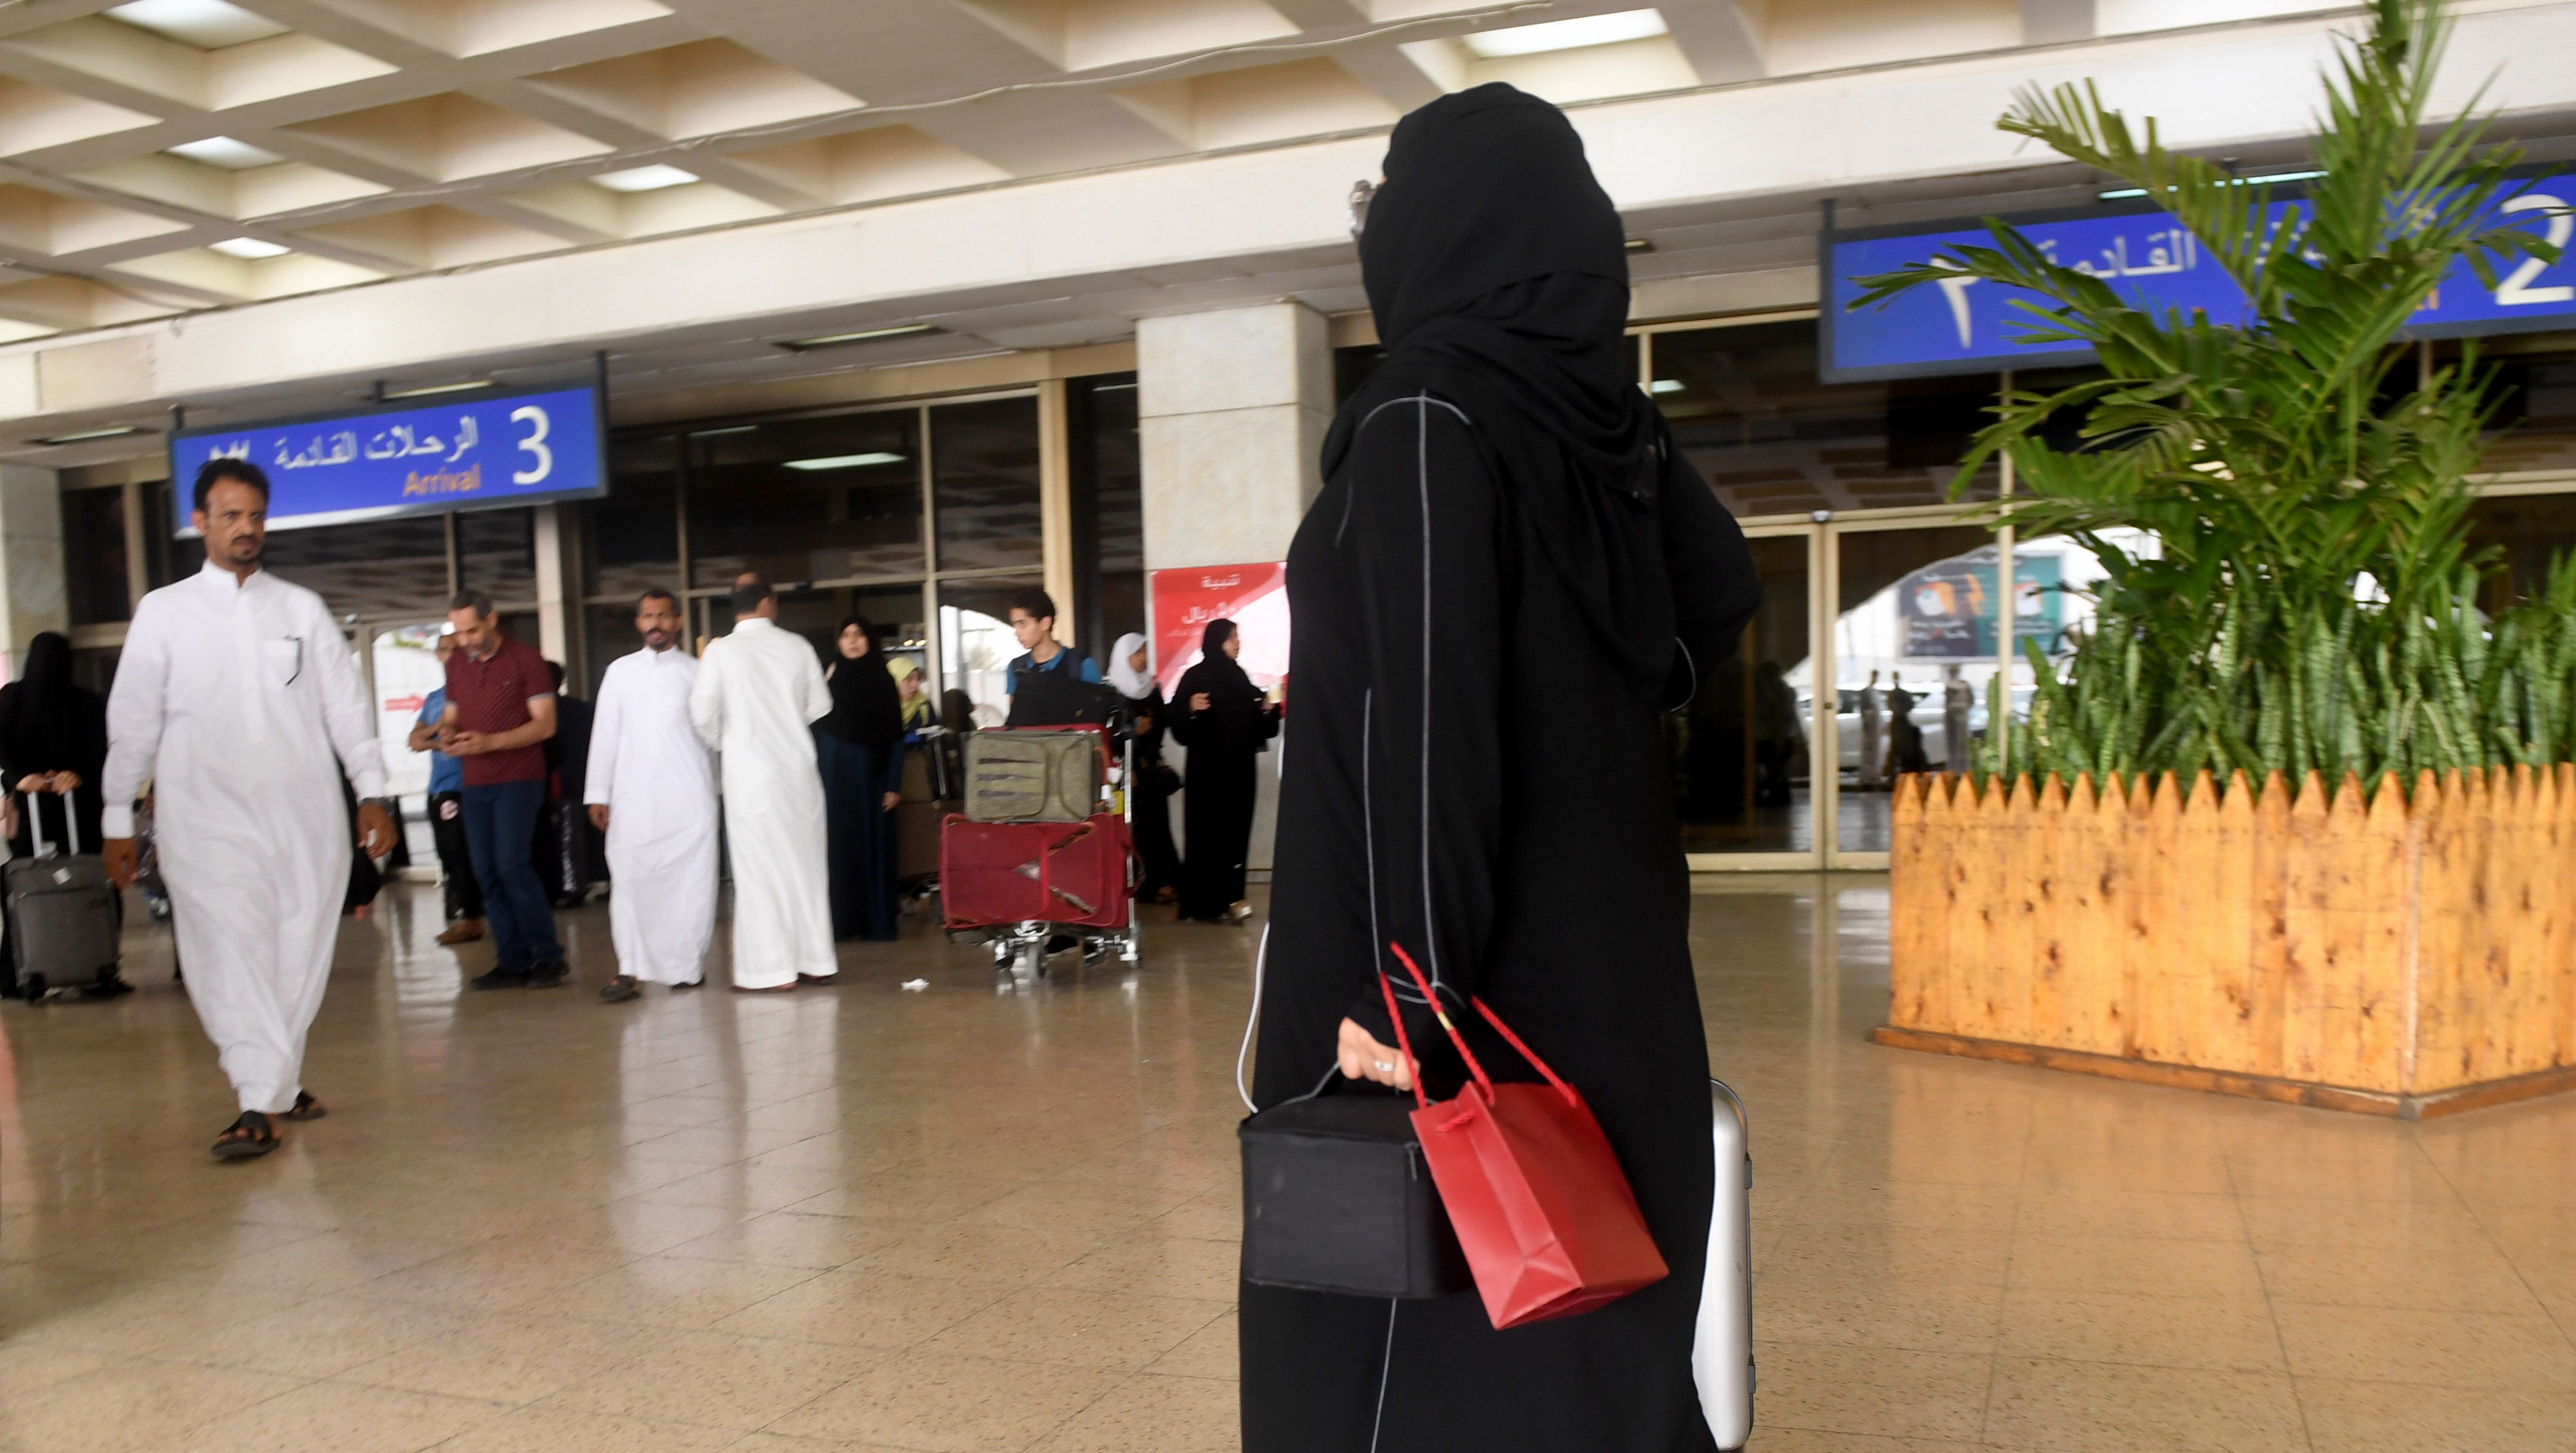 Mostantól ugyanazon az ajtón mehetnek be a nők és a férfiak a szaúd-arábiai éttermekbe